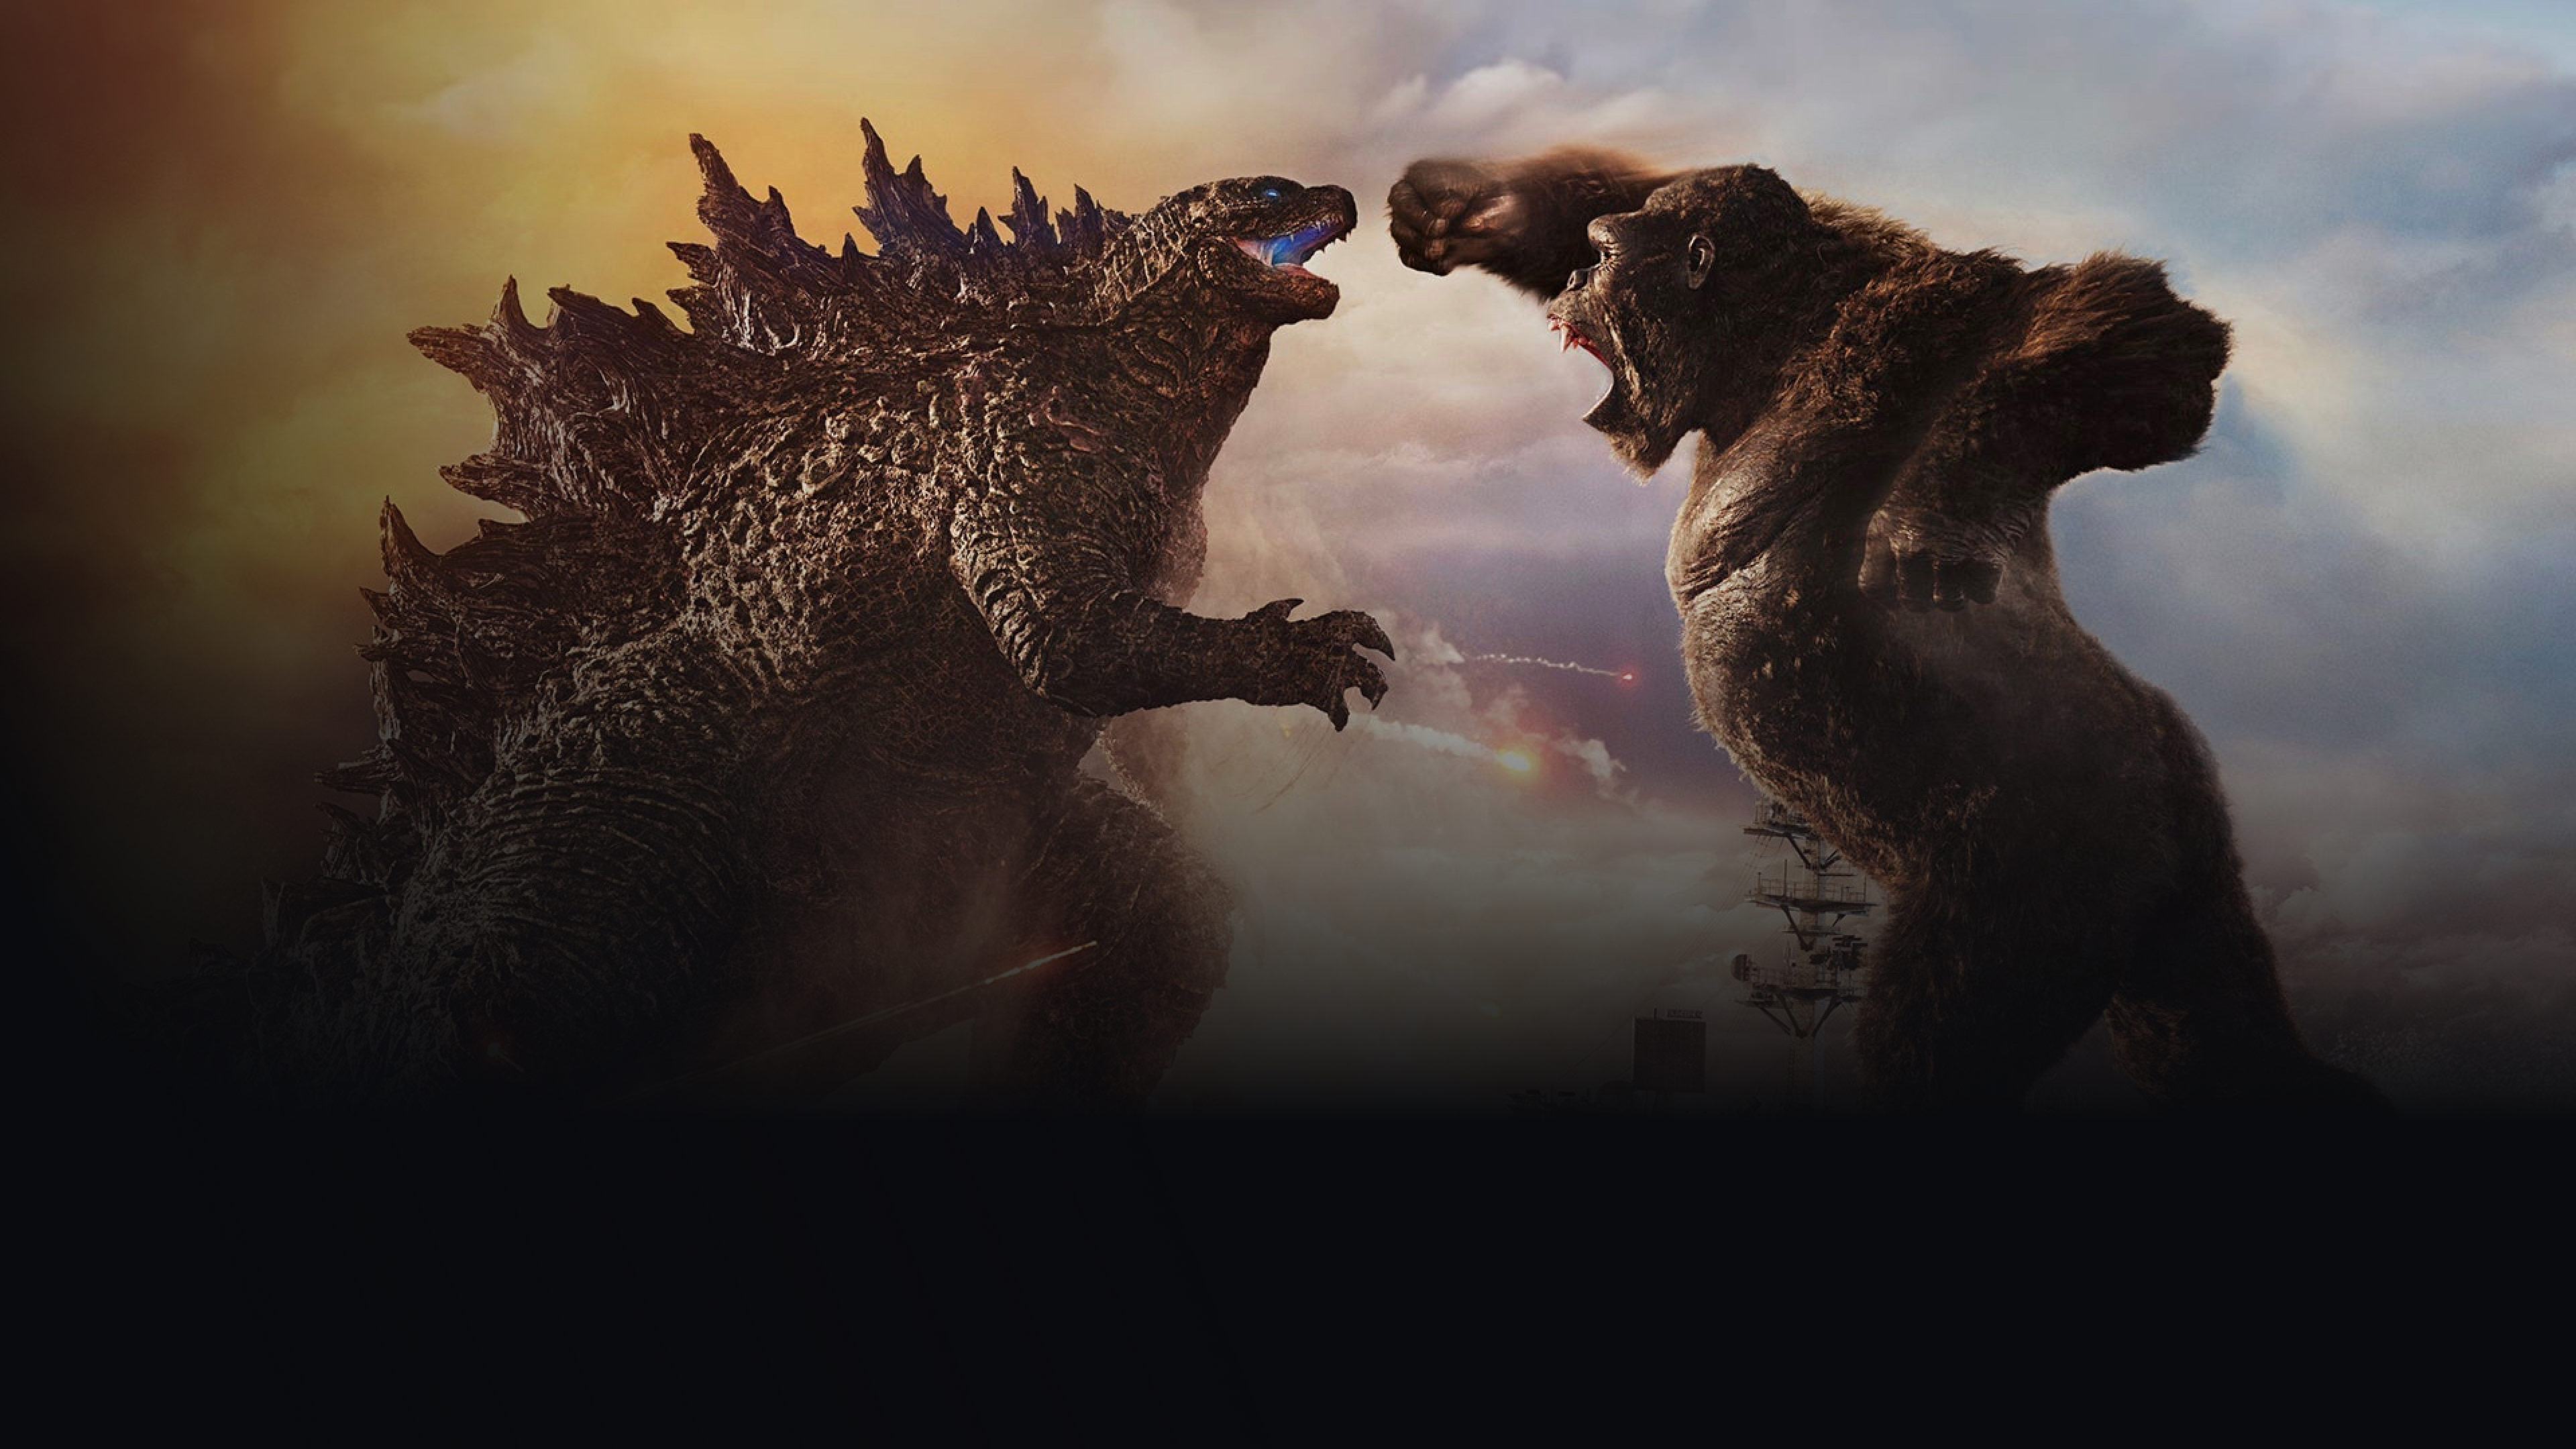 Background image featuring Godzilla vs Kong